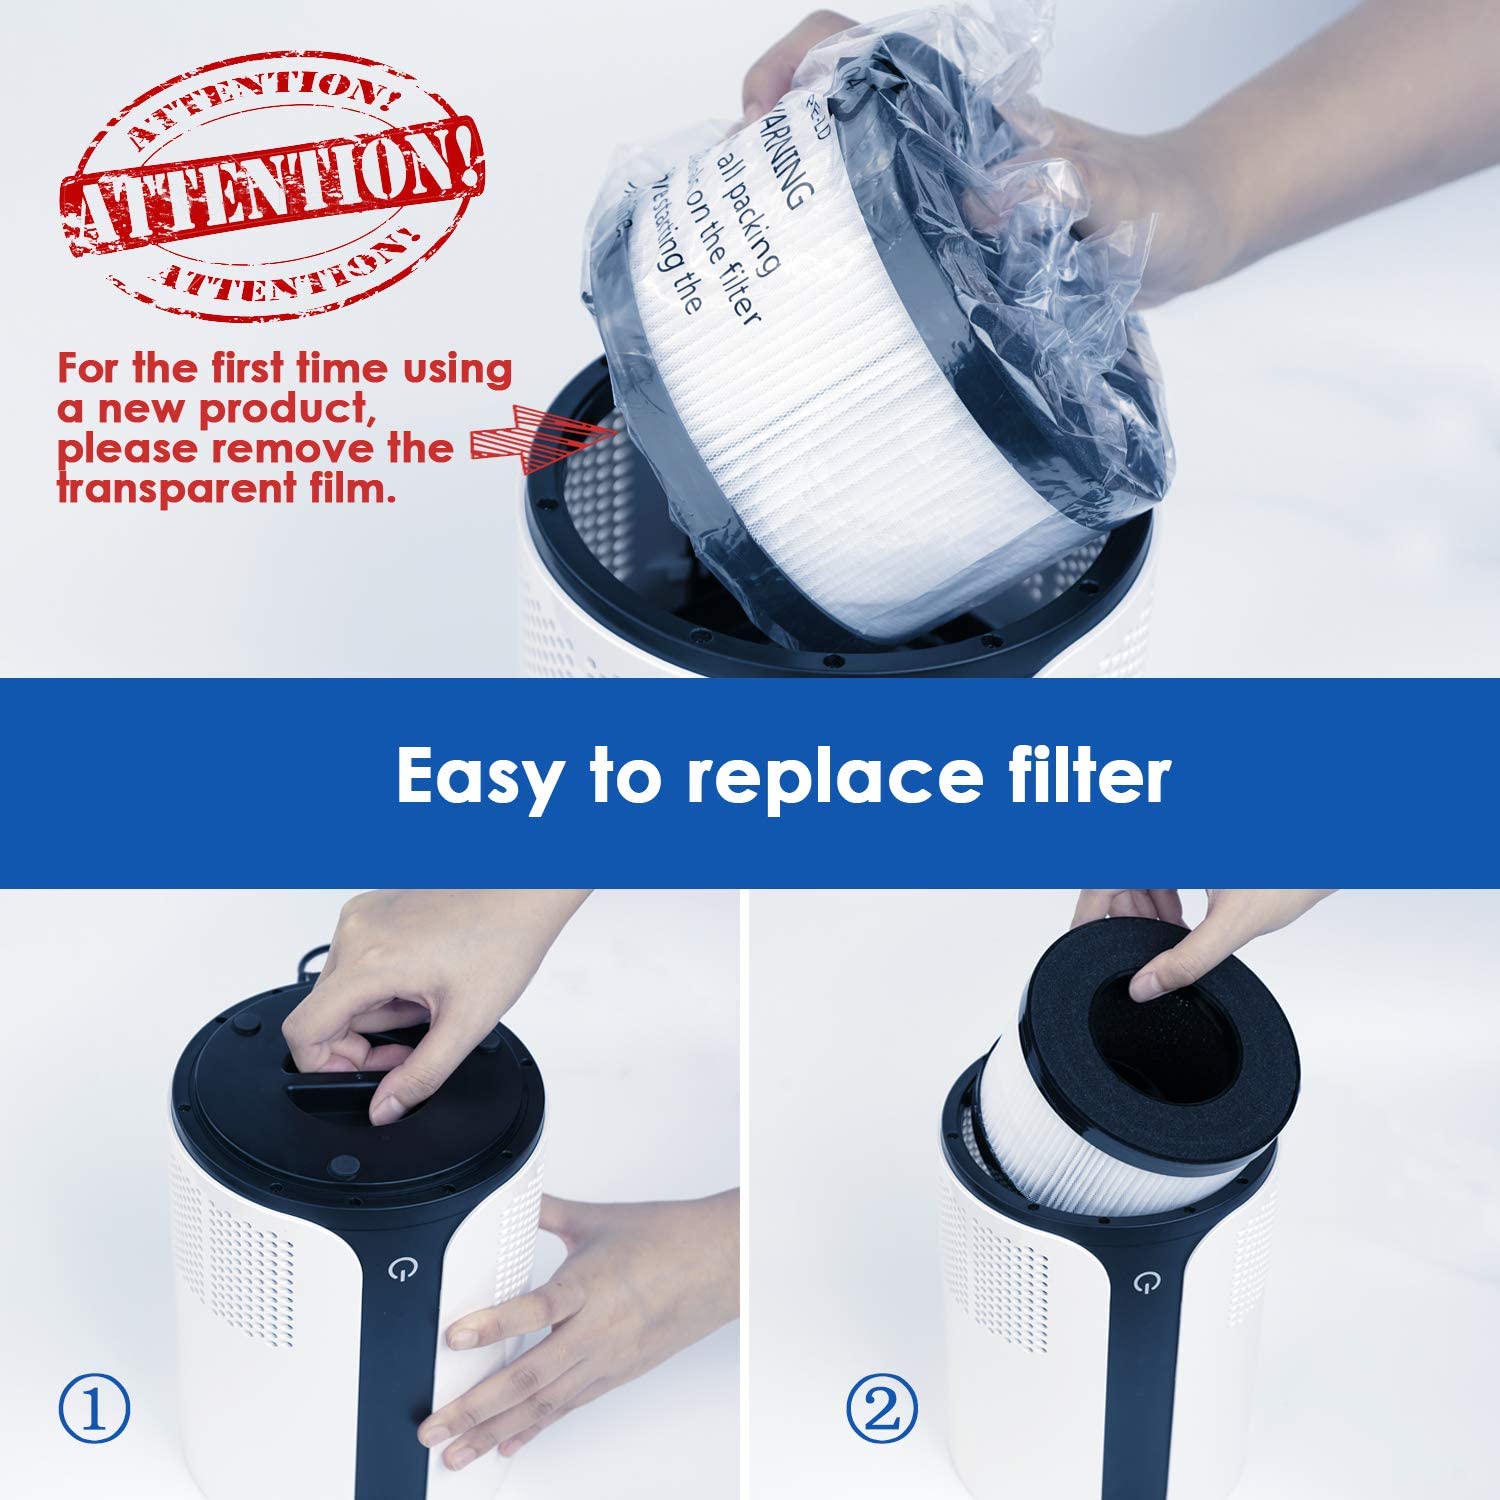 HD3 Air Purifier Filter | True HEPA Replacement